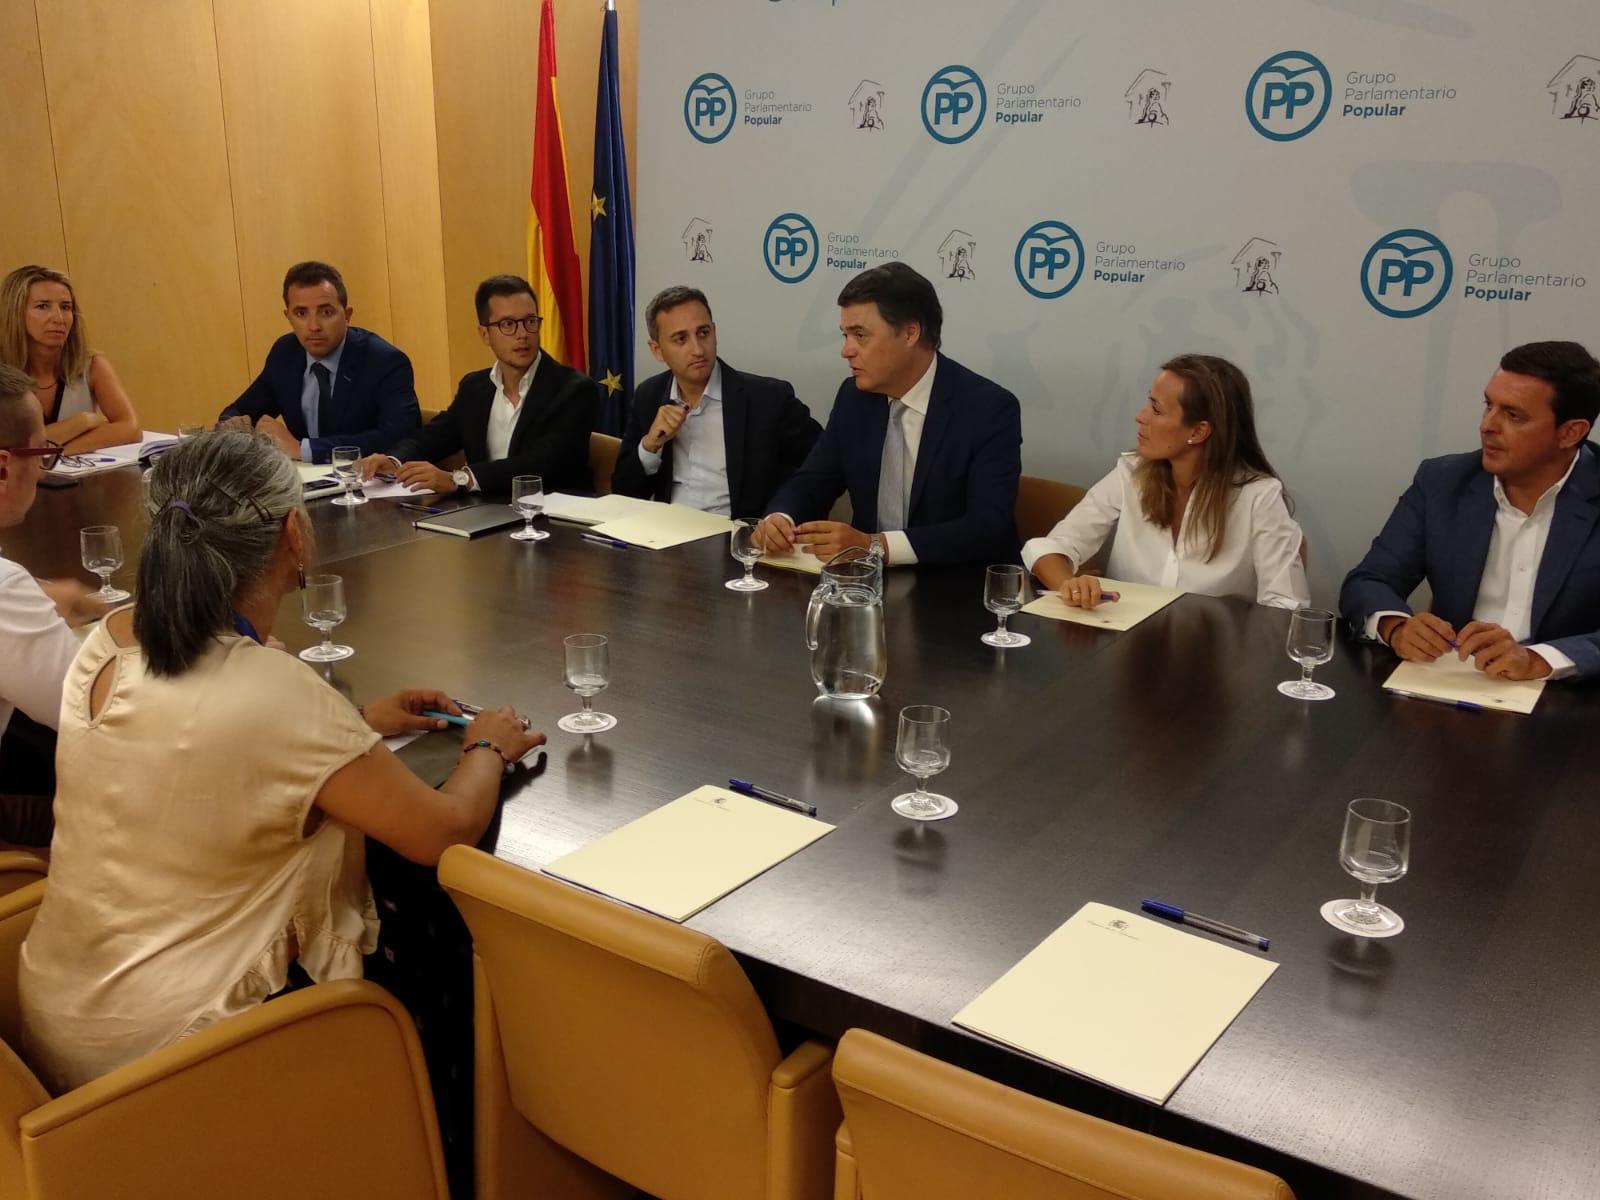 El Grupo Parlamentario del Partido Popular se ha reunido este lunes con la Asociación Española contra la Despoblación